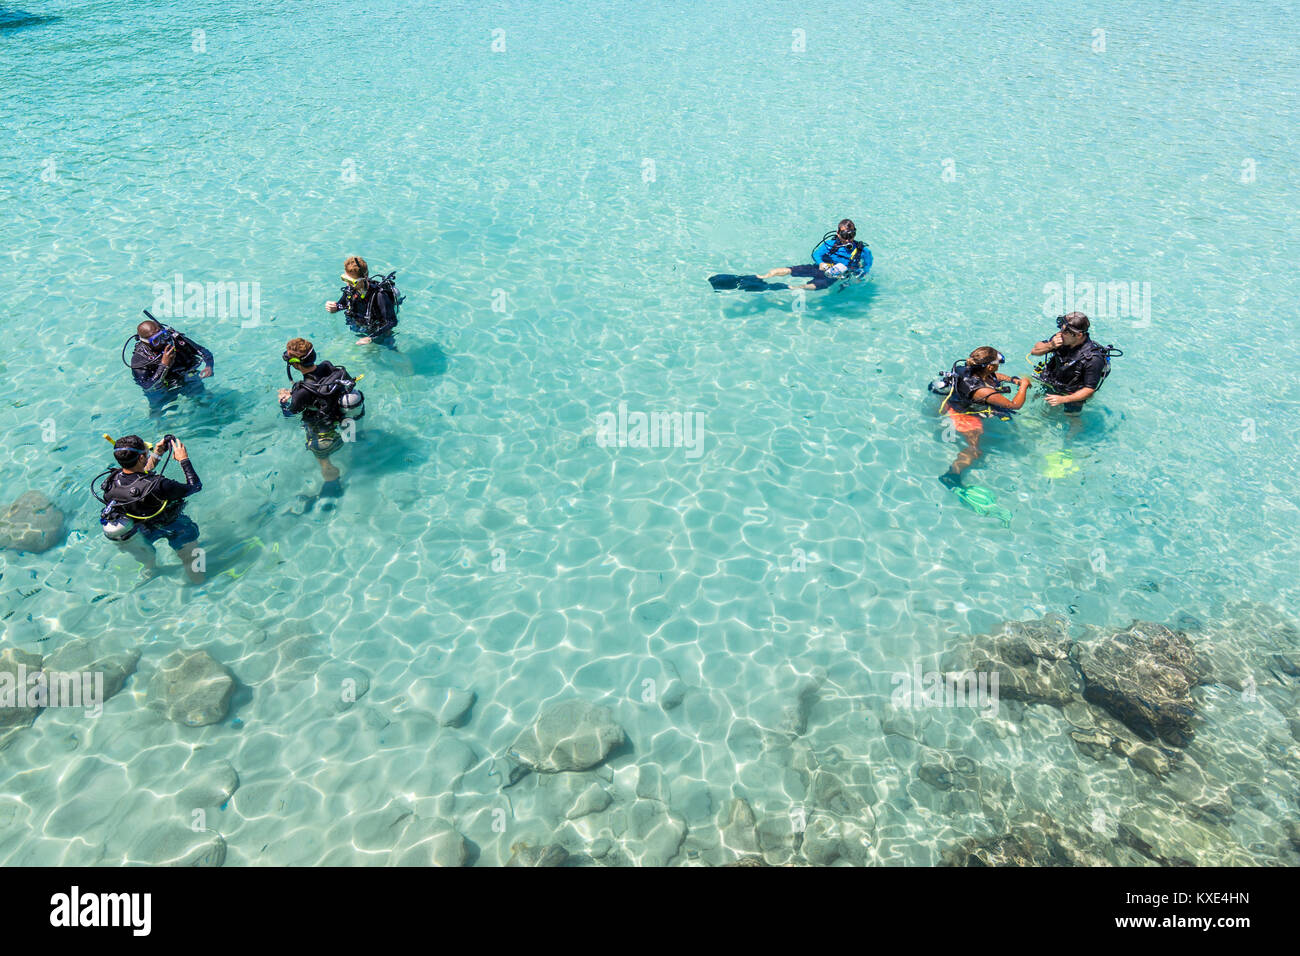 Eine Gruppe von Studenten Tauchen haben eine Lektion im flachen kristallklarem Wasser von einer tropischen Insel. Stockfoto